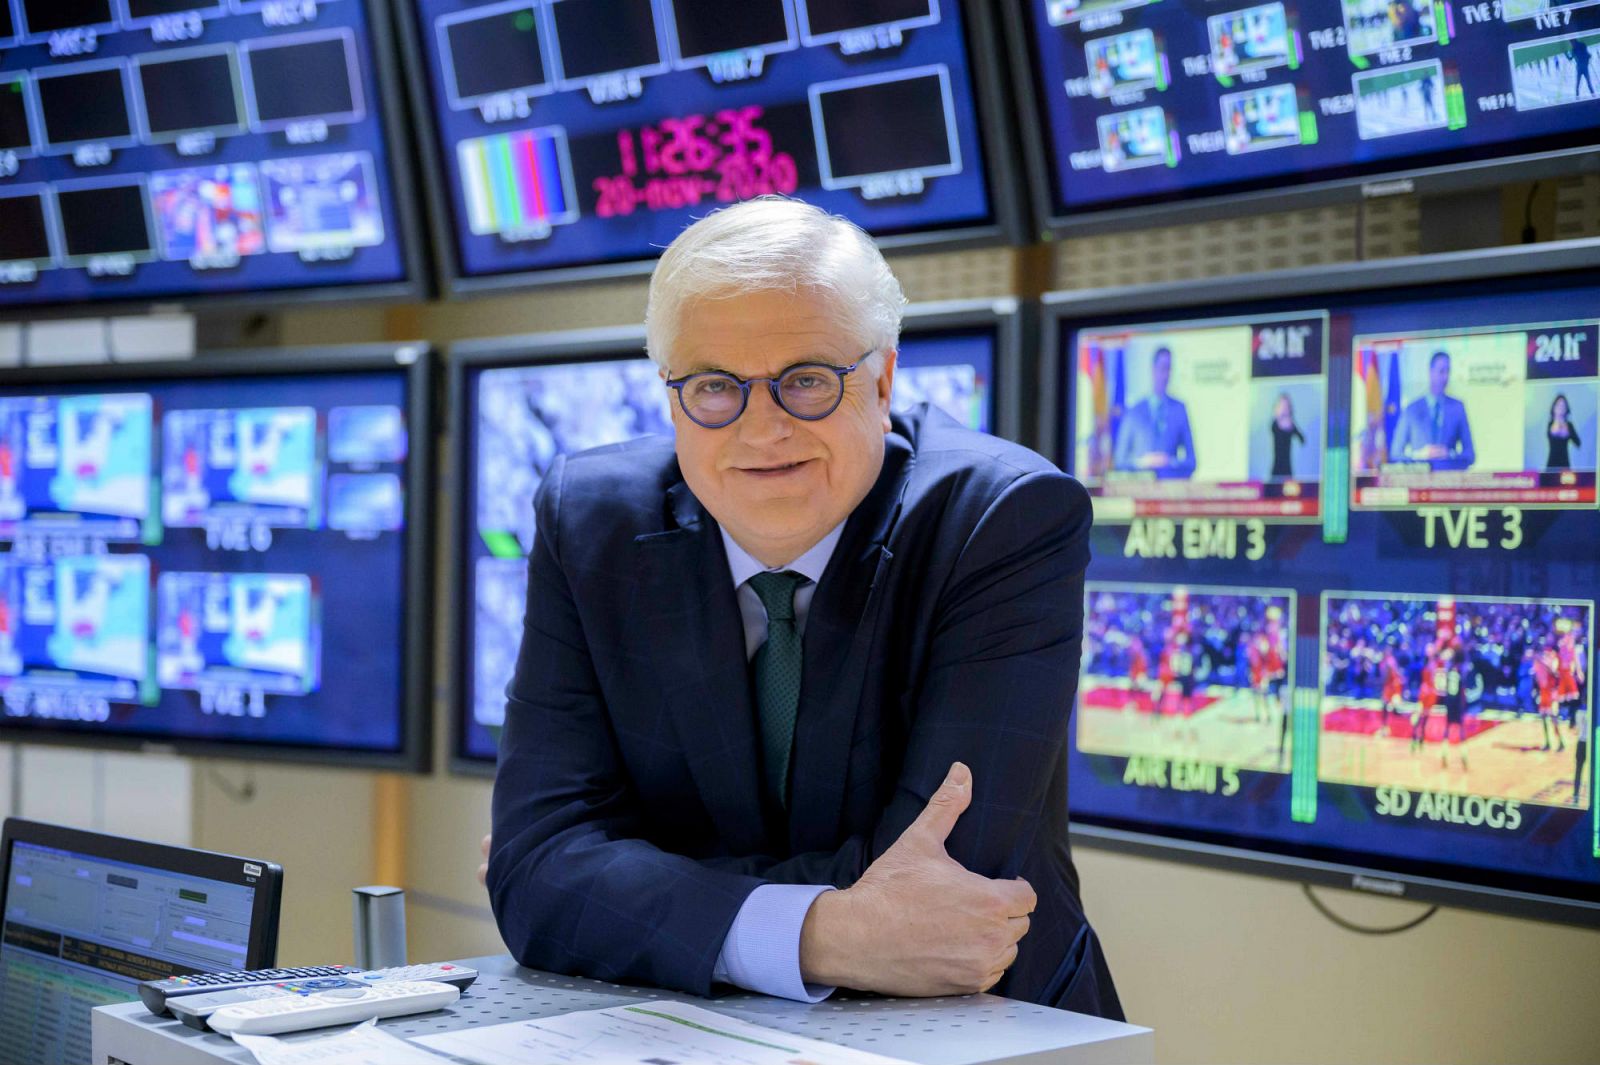 Lluís Falgàs rodejat de monitors al control d'emissións de RTVE Catalunya